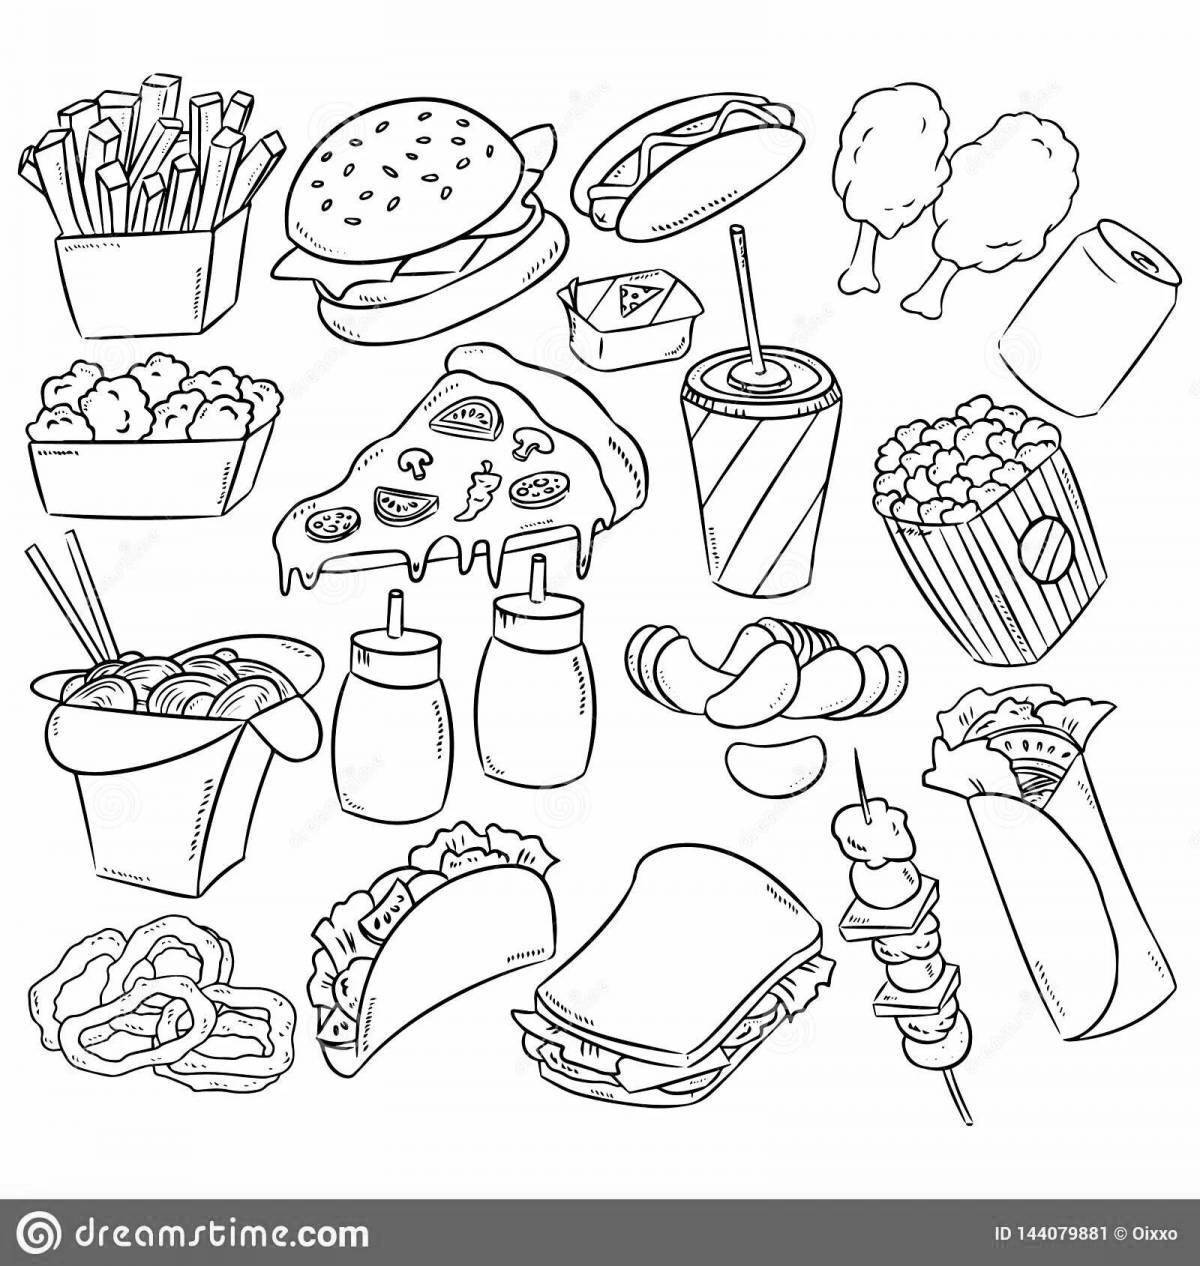 Еда раскрасить. Раскраска еда. Раскраски маленькие еда. Раскраска еда маленькие картинки. Рисунки для срисовки еды раскраска маленькие.